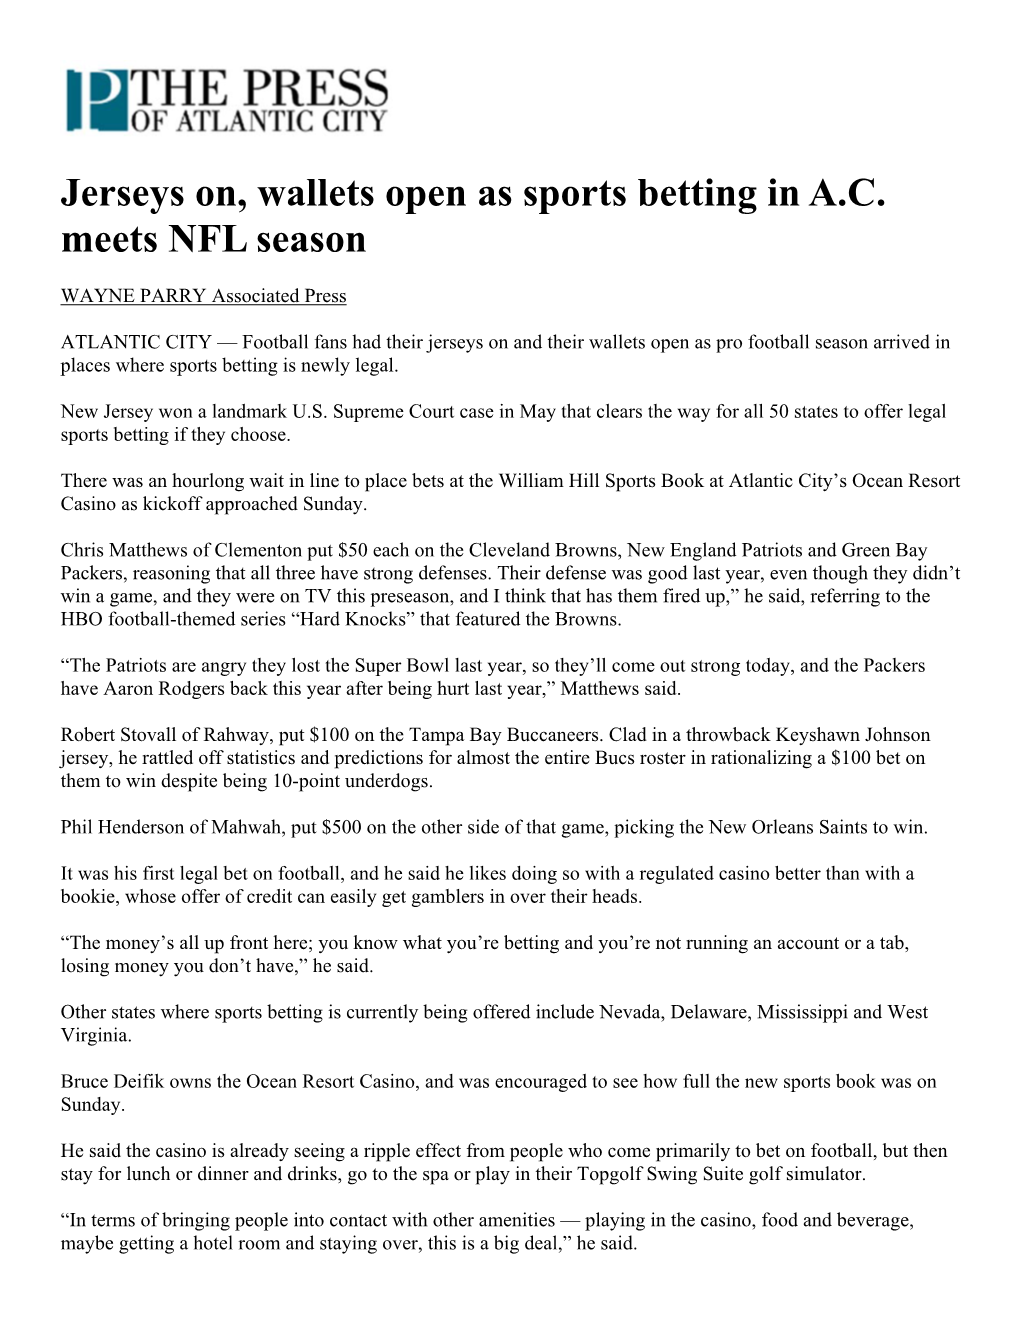 Jerseys On, Wallets Open As Sports Betting in A.C. Meets NFL Season